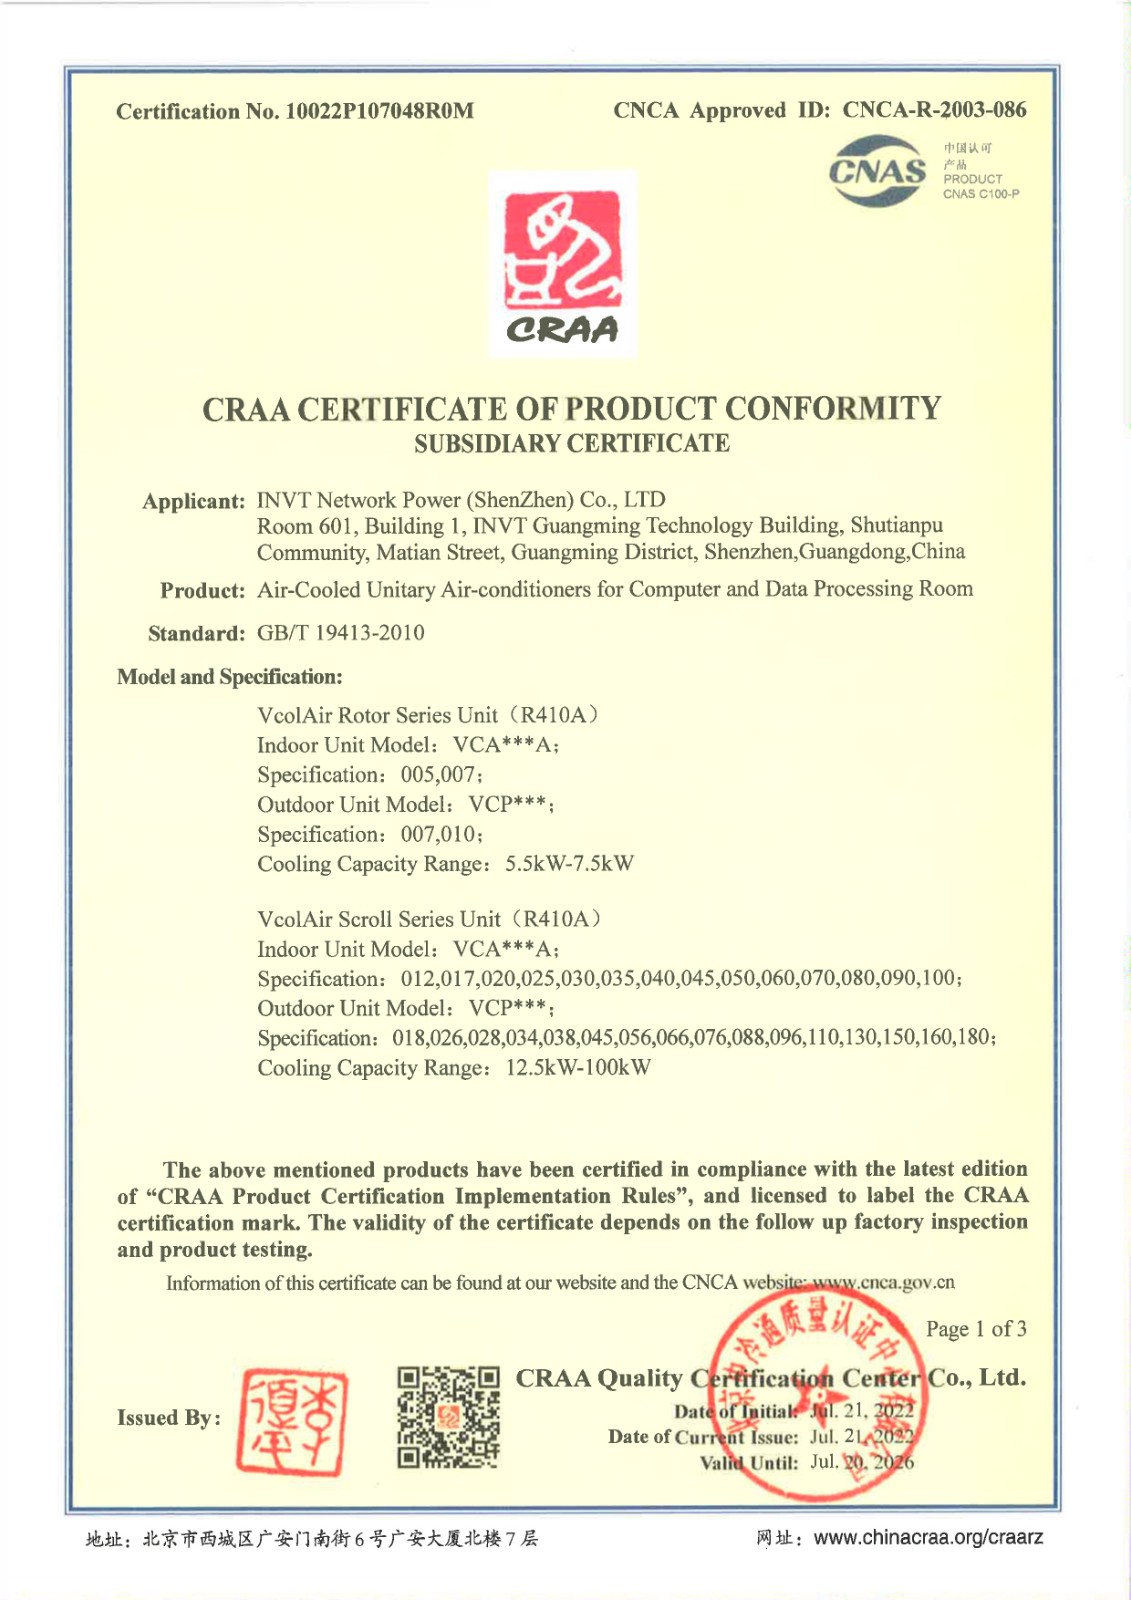 空调CRAA英文证书【有效期至2026年7月20日】_page-0002.jpg